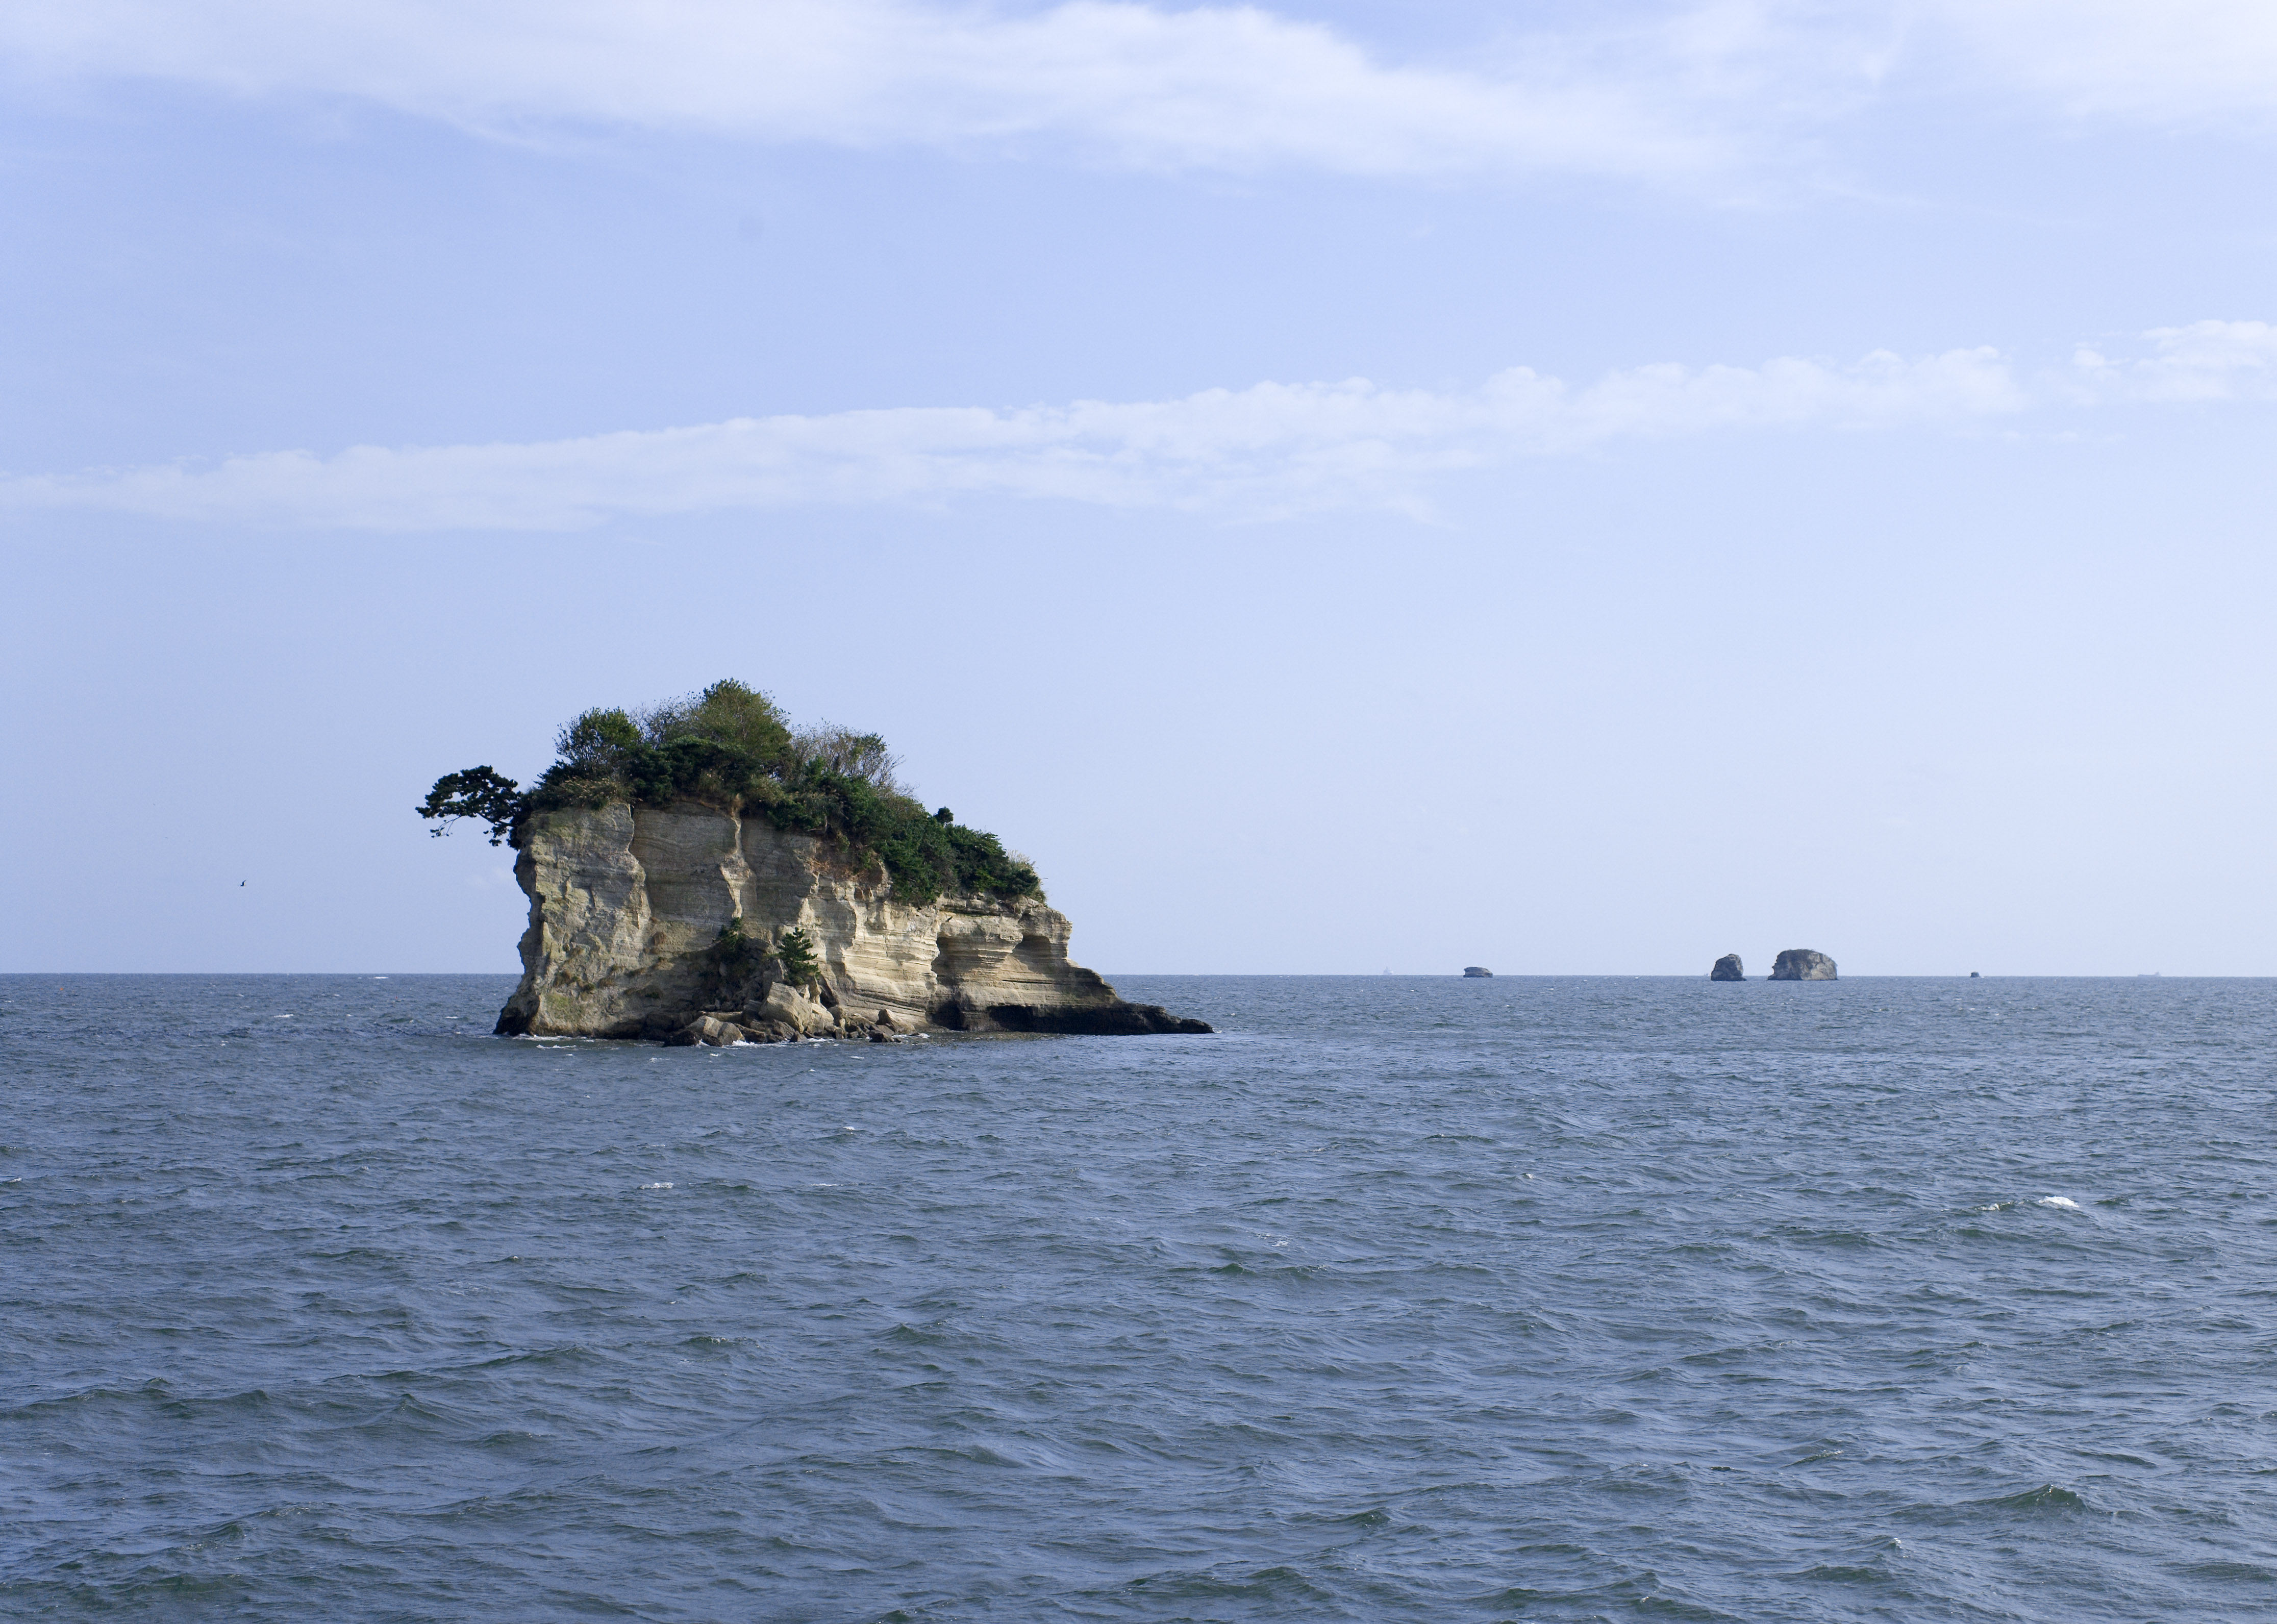 fotografia, material, livra, ajardine, imagine, proveja fotografia,Trs a maioria das vises bonitas em Japo Matsushima, ilha, cu azul, nuvem, O mar